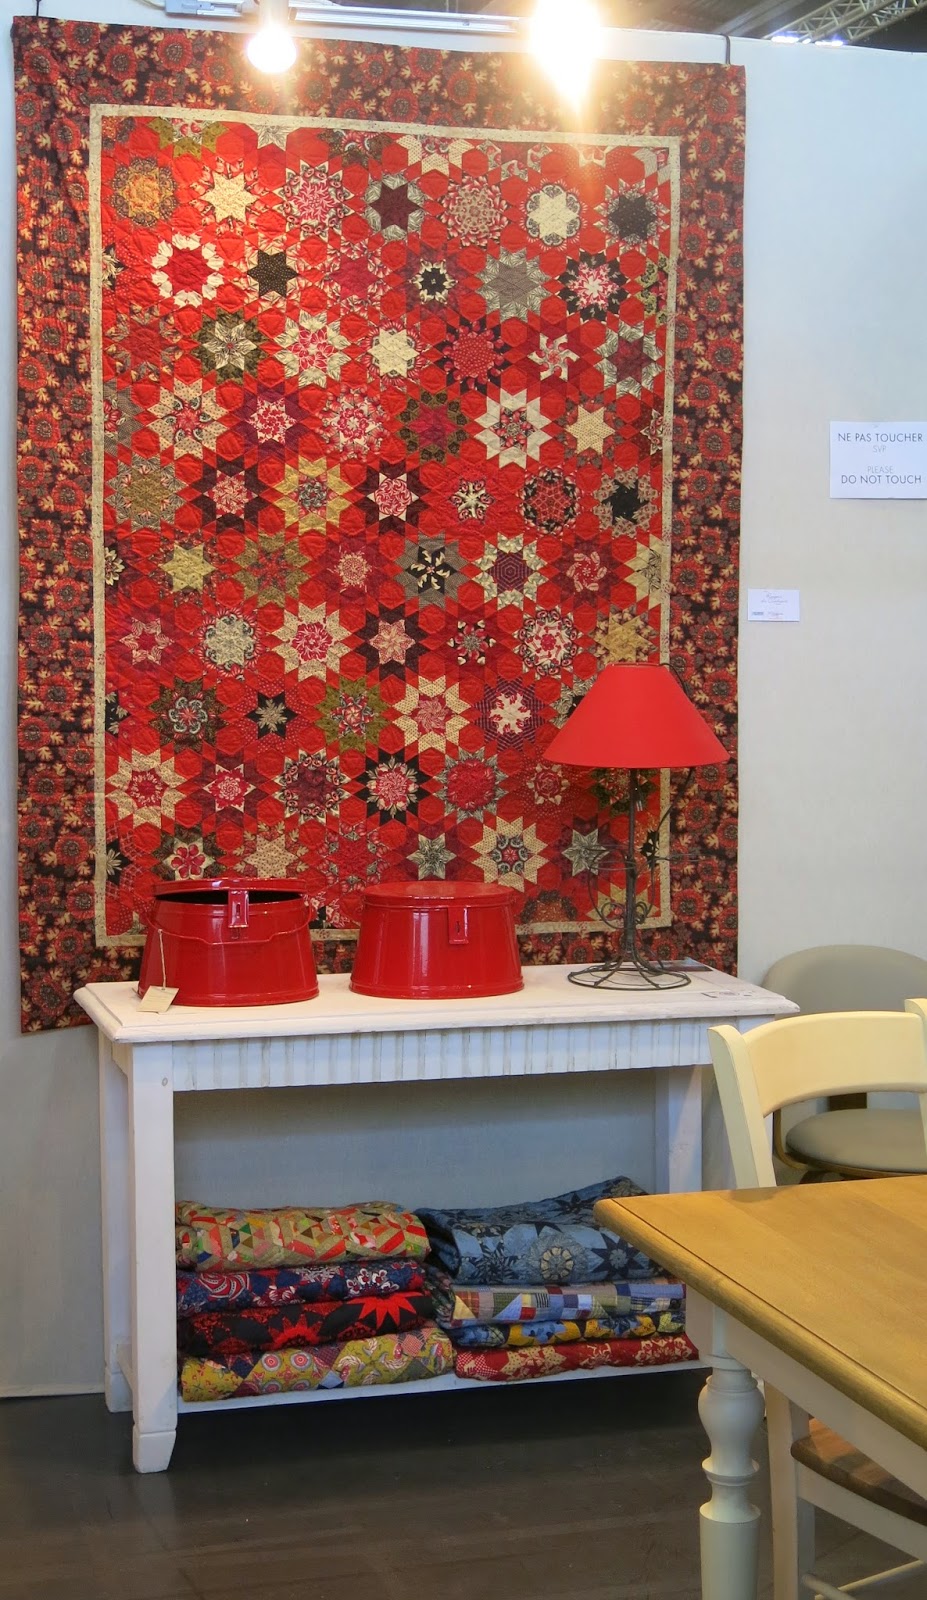 Quilt exhibition in Nantes - Willyne Hammerstein quilts